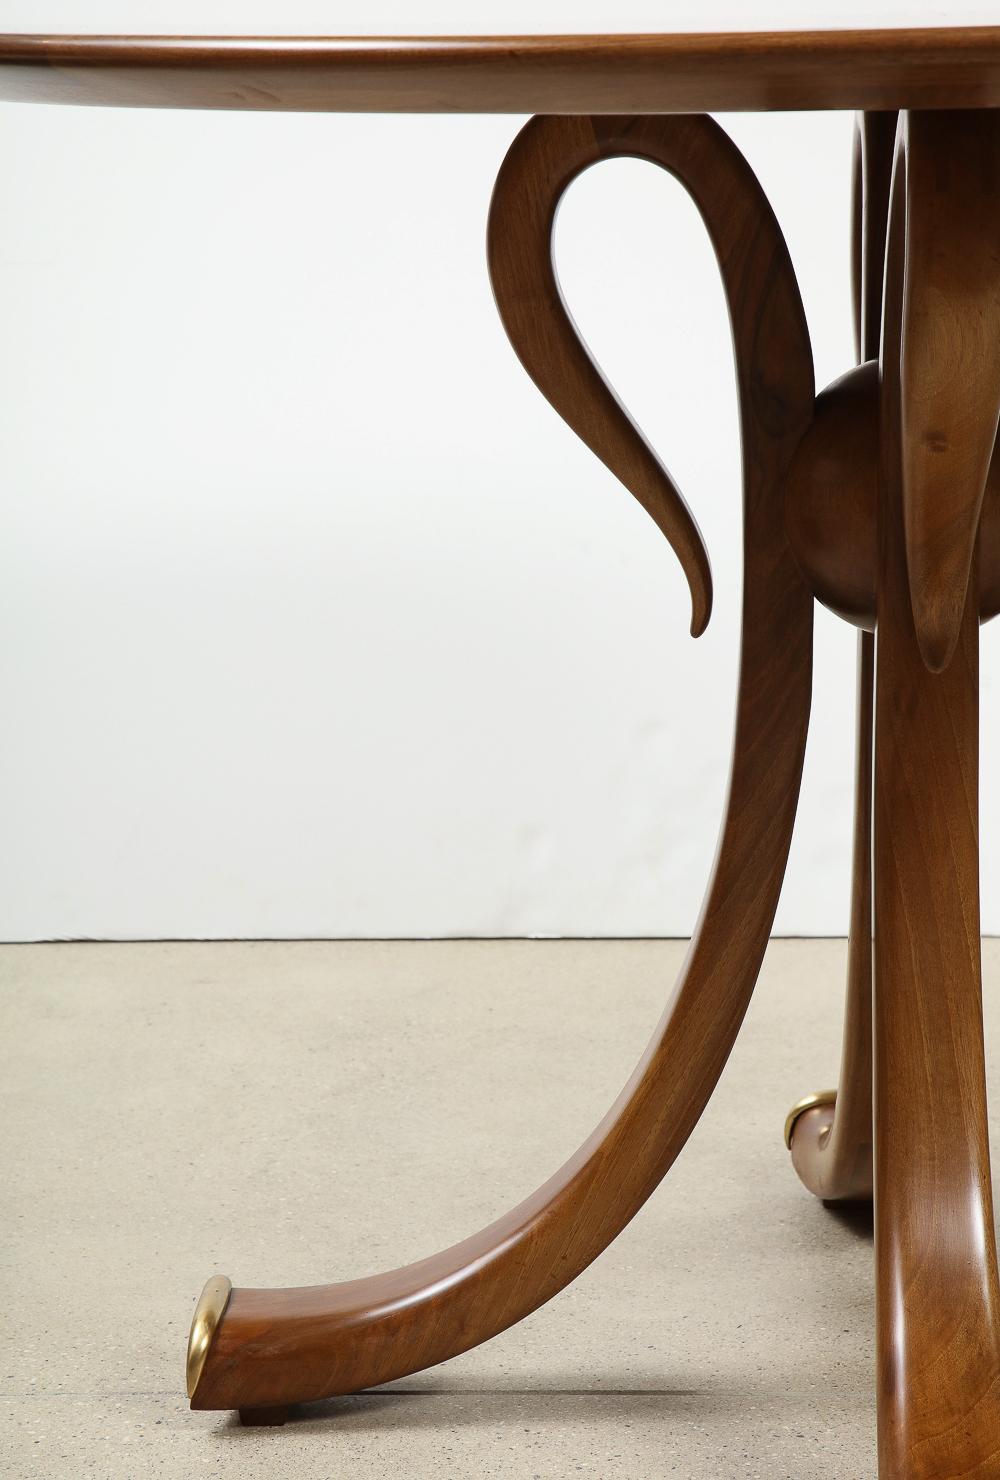 Italian Rare Circular Pedestal Table by Osvaldo Borsani for ABV